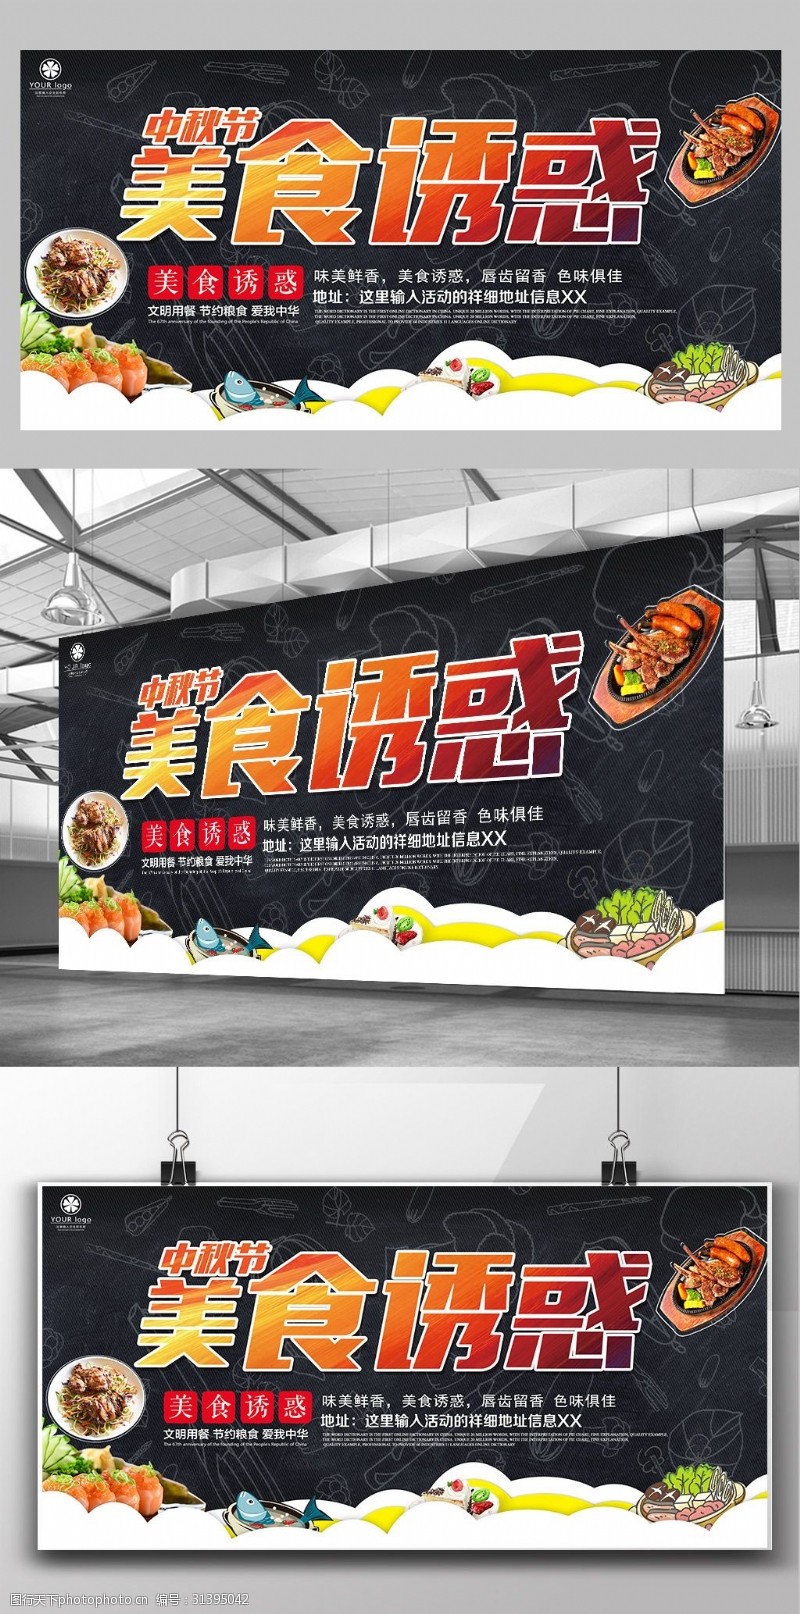 餐厅文化宣传中秋节美食节美食的诱惑活动宣传展板